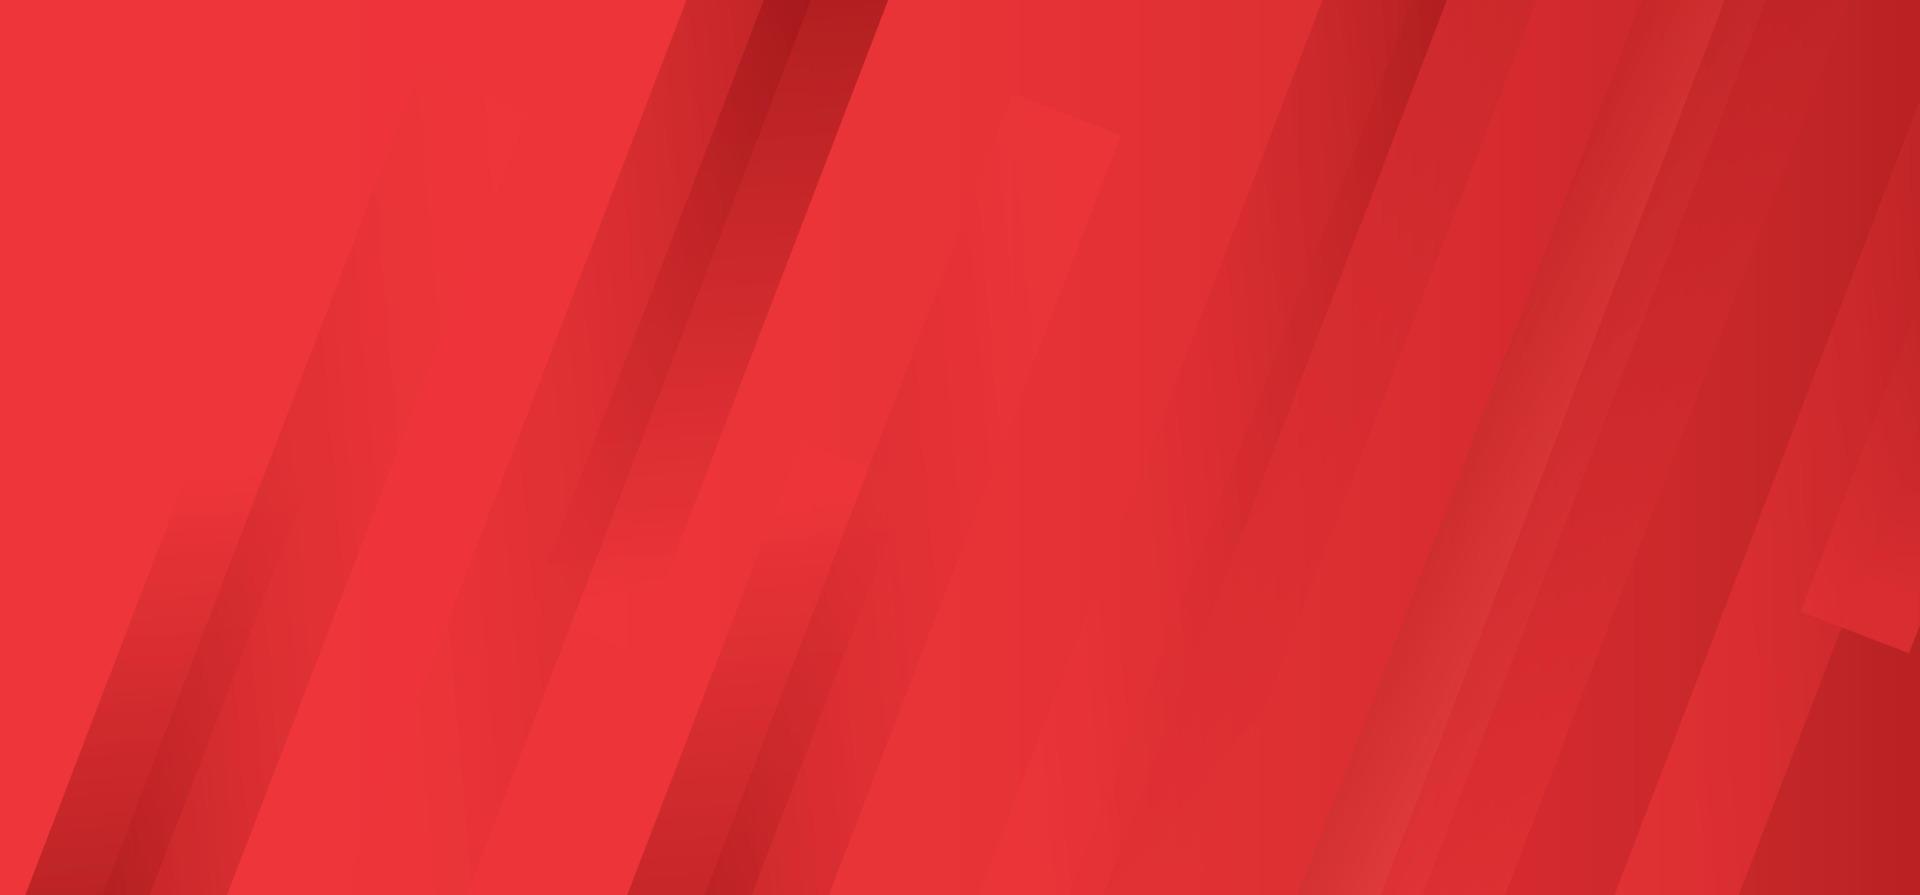 rode moderne minimalistische vector abstracte sjabloon voor zakelijke achtergrondontwerp. luxe vectorillustratie met strepen voor het bedrijfsleven.